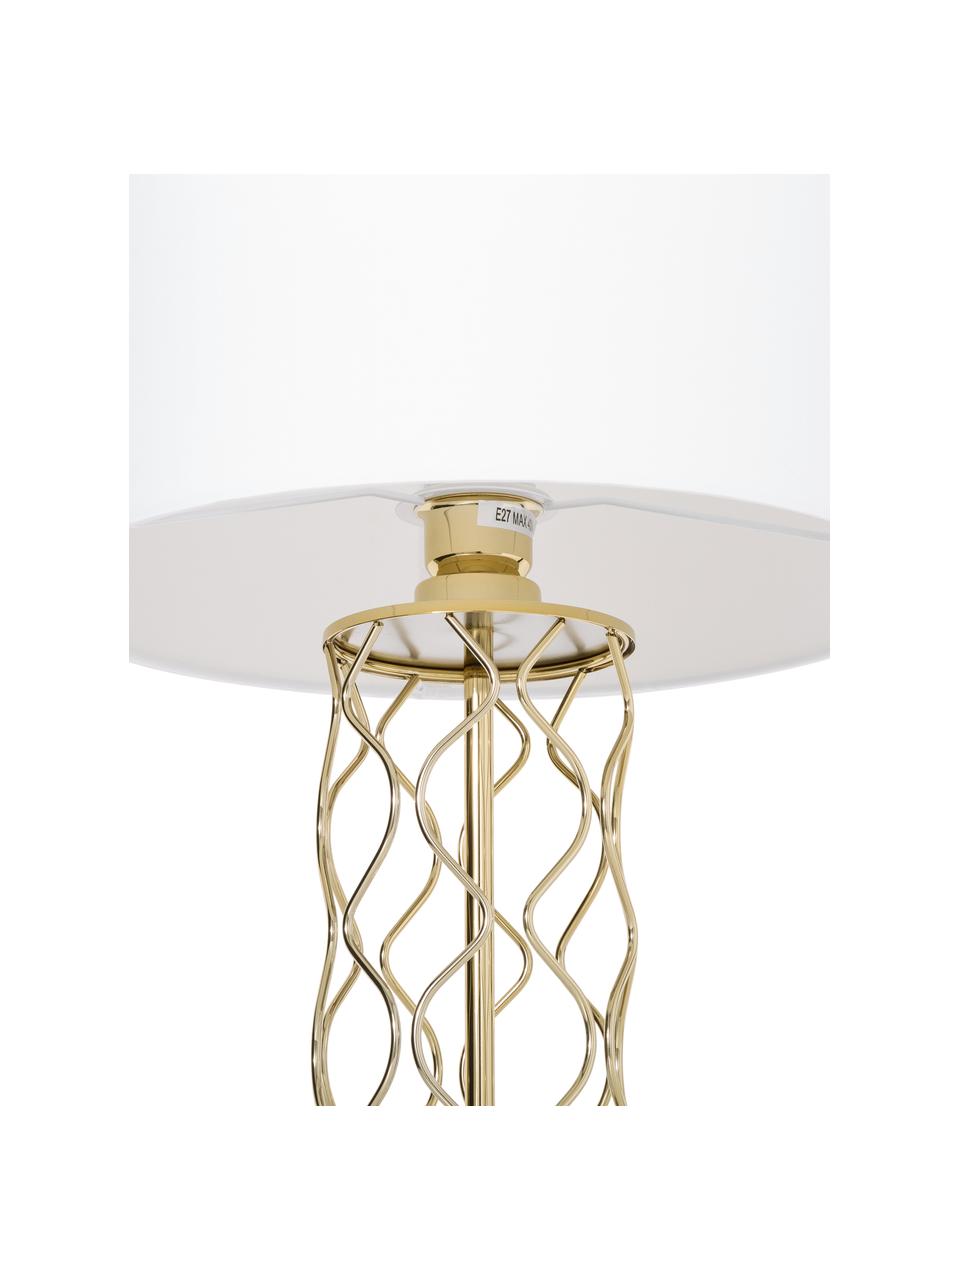 Grote tafellamp Adelaide-goudkleurig, Lampenkap: textiel, Lampvoet: metaal, Wit, goudkleurig, Ø 35 x H 62 cm